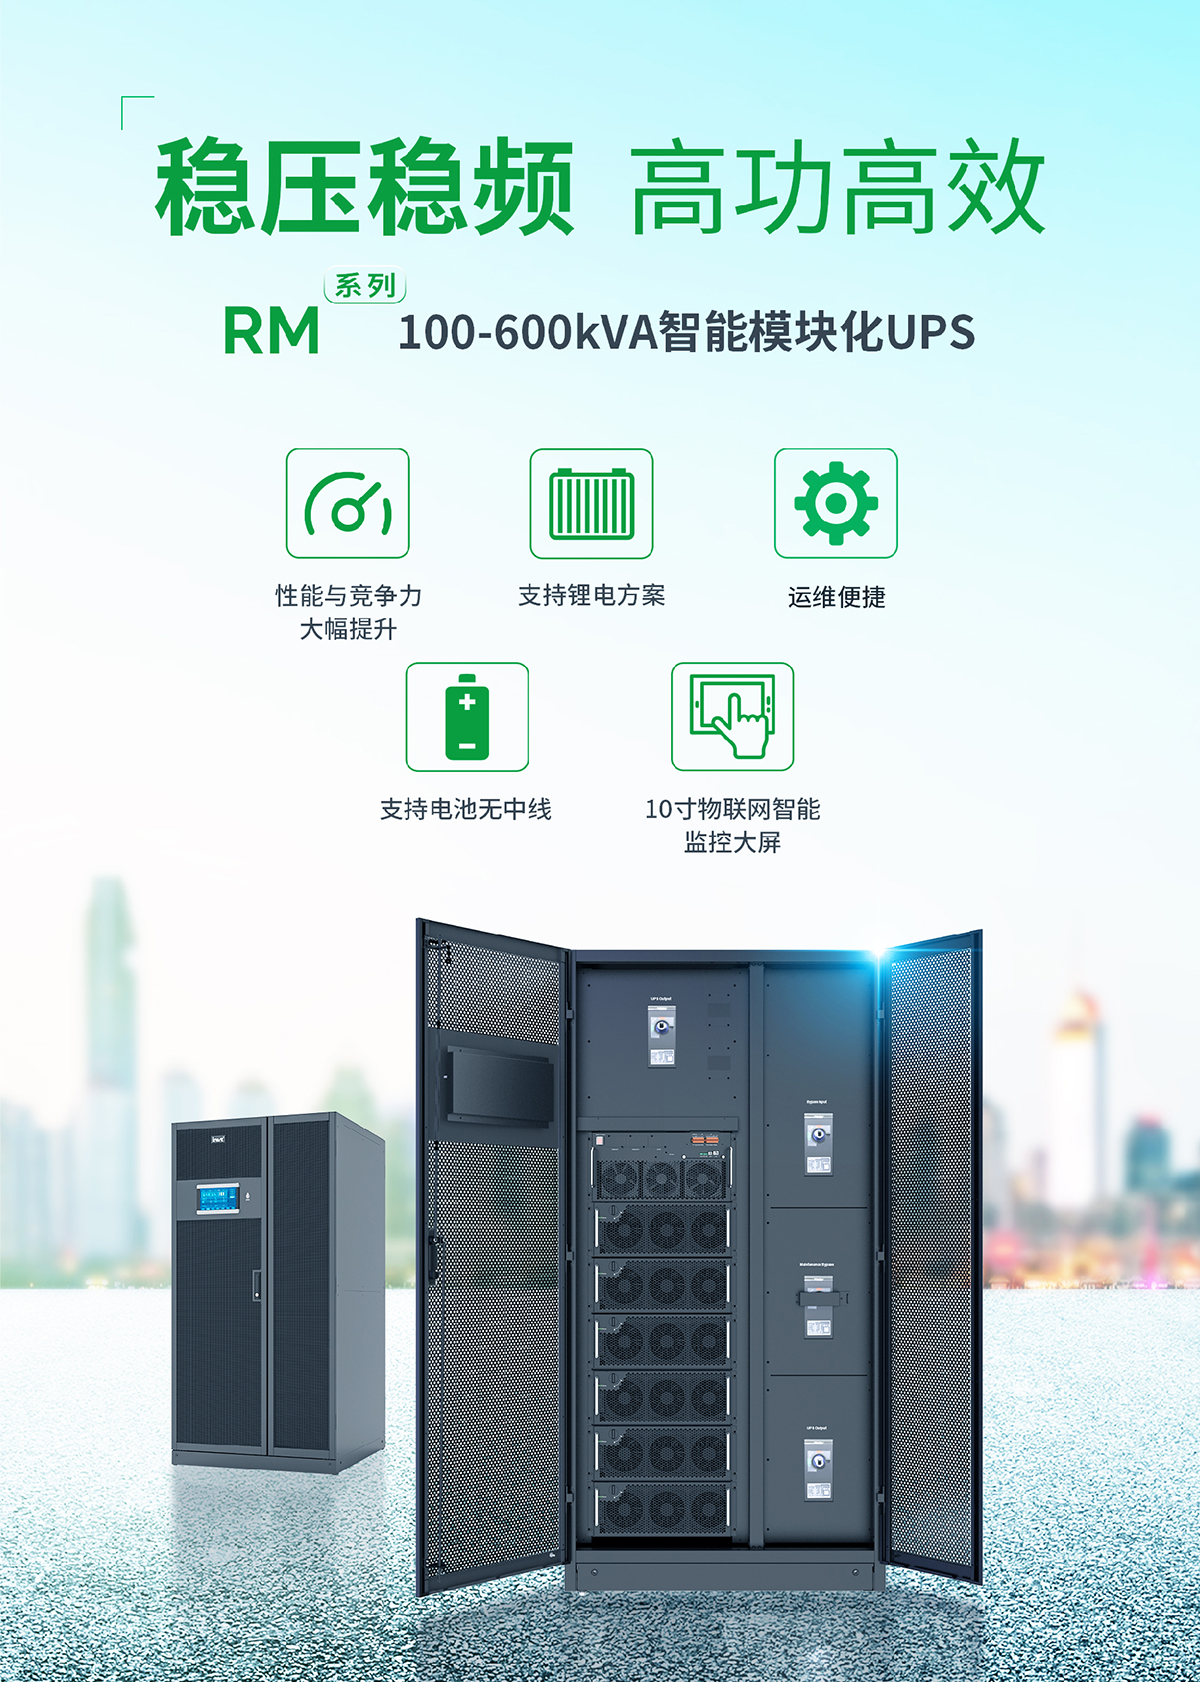 新品上市 | RM系列100-600kVA智能模块化UPS解决方案